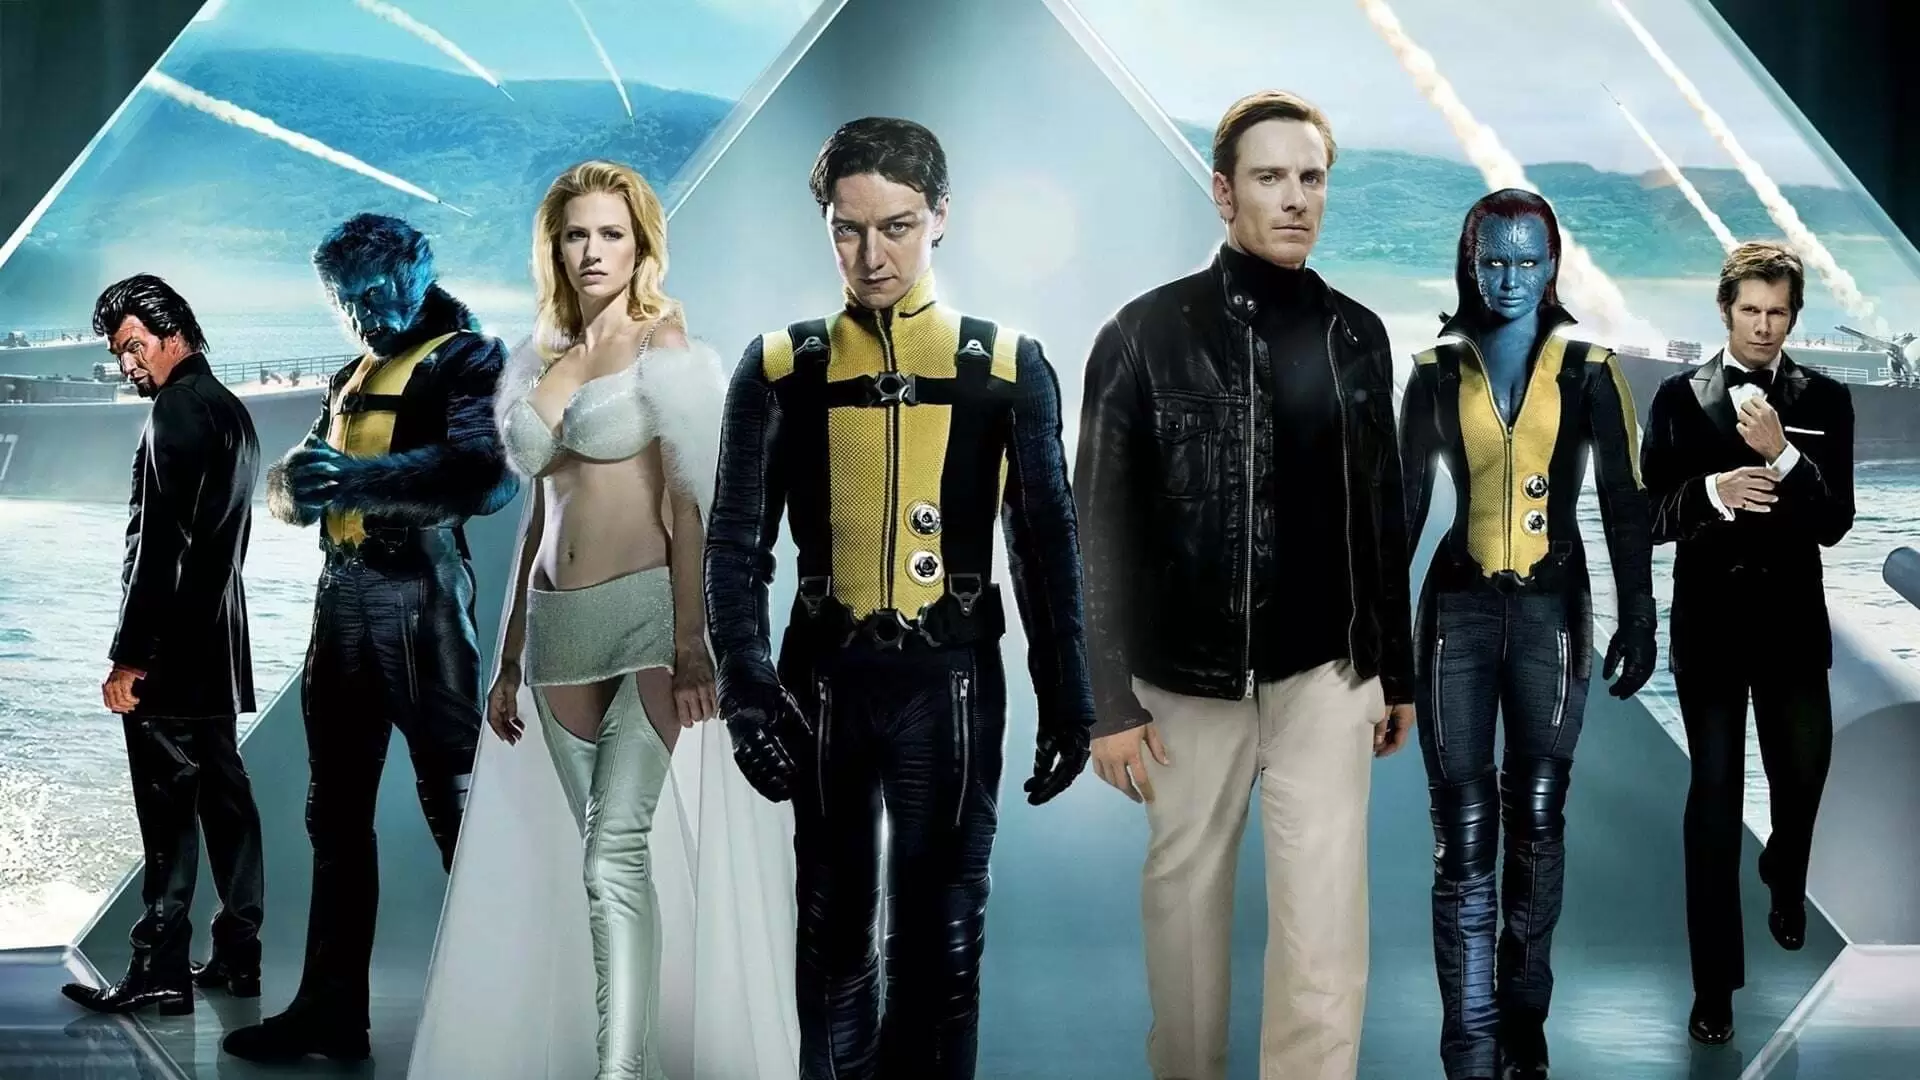 دانلود فیلم X-Men: First Class 2011 (مردان ایکس: کلاس اول) با زیرنویس فارسی و تماشای آنلاین